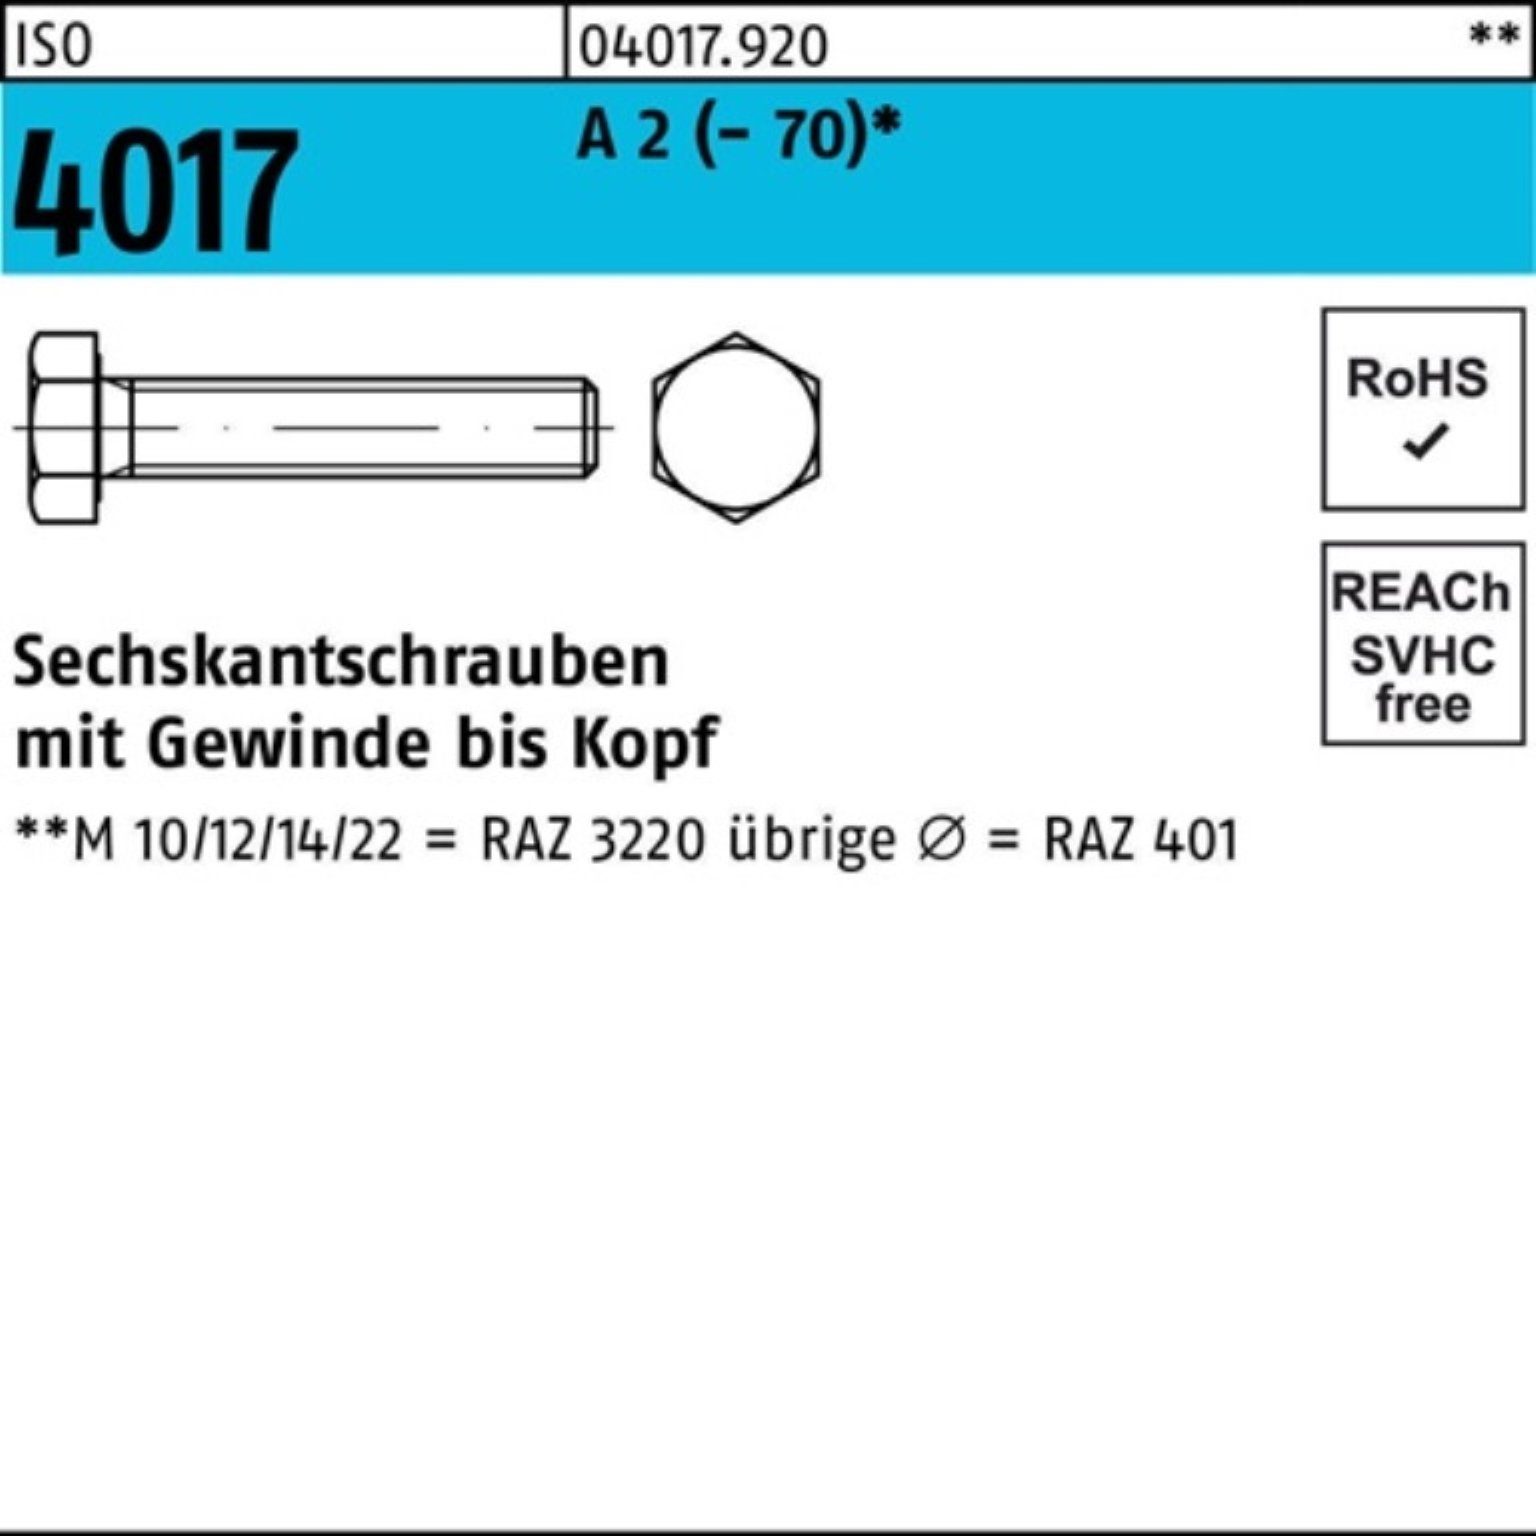 Pack 4017 140 A 2 ISO 100er VG Bufab Stück M10x (70) 1 Sechskantschraube Sechskantschraube